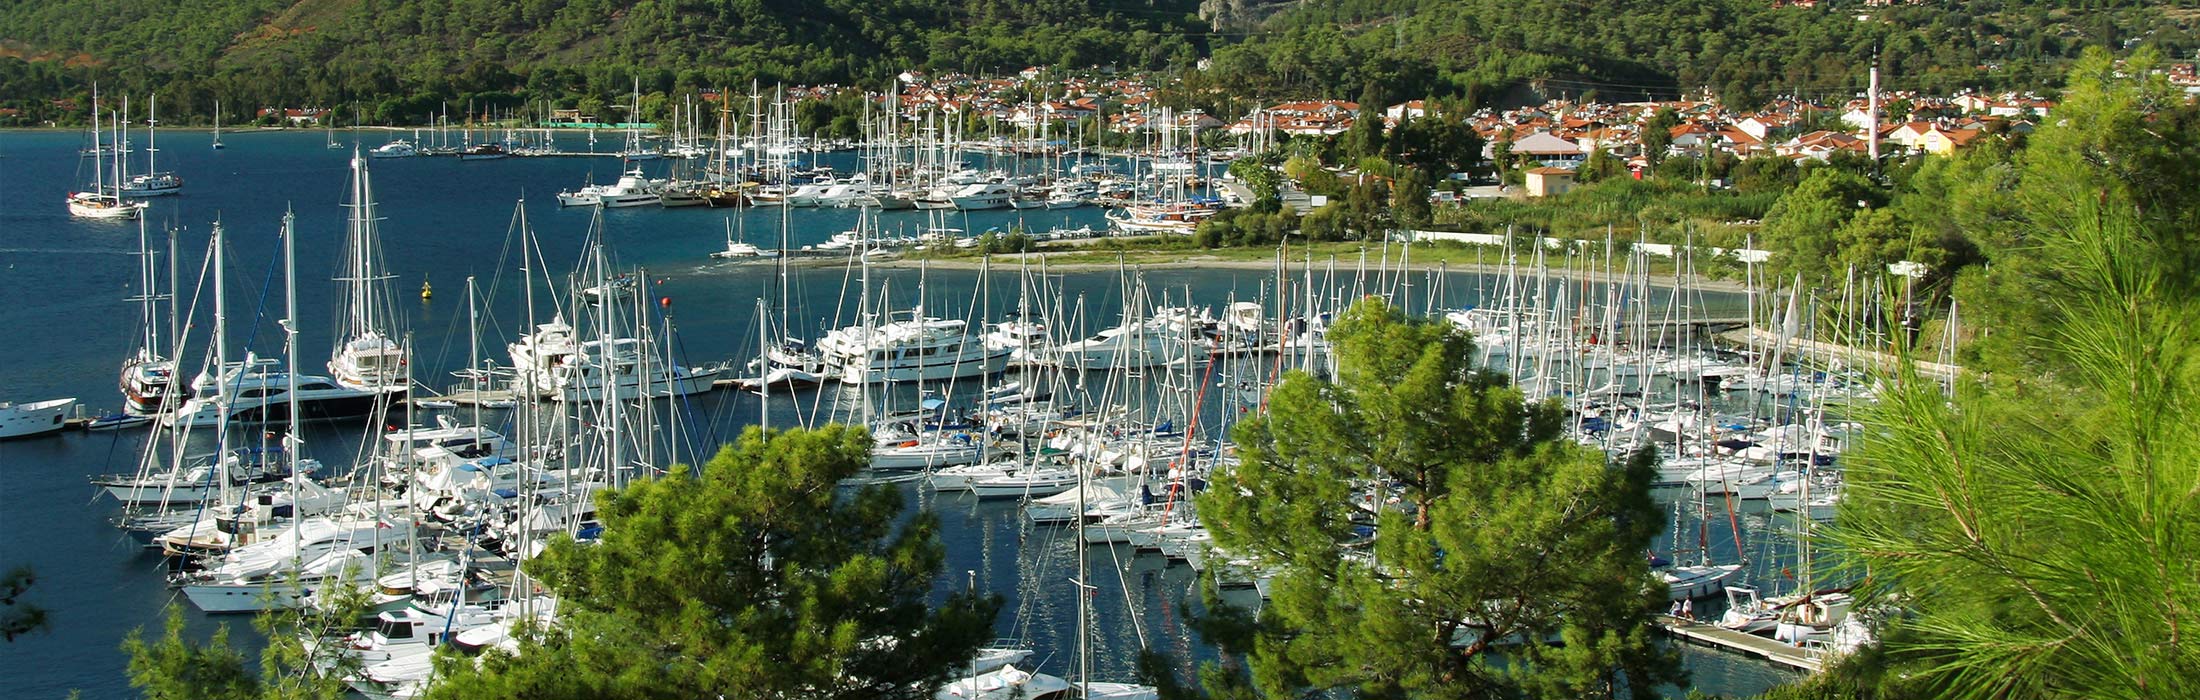 top-yacht-charter-destinations-mediterranean-turkey-gocek-main-slider-1.jpg